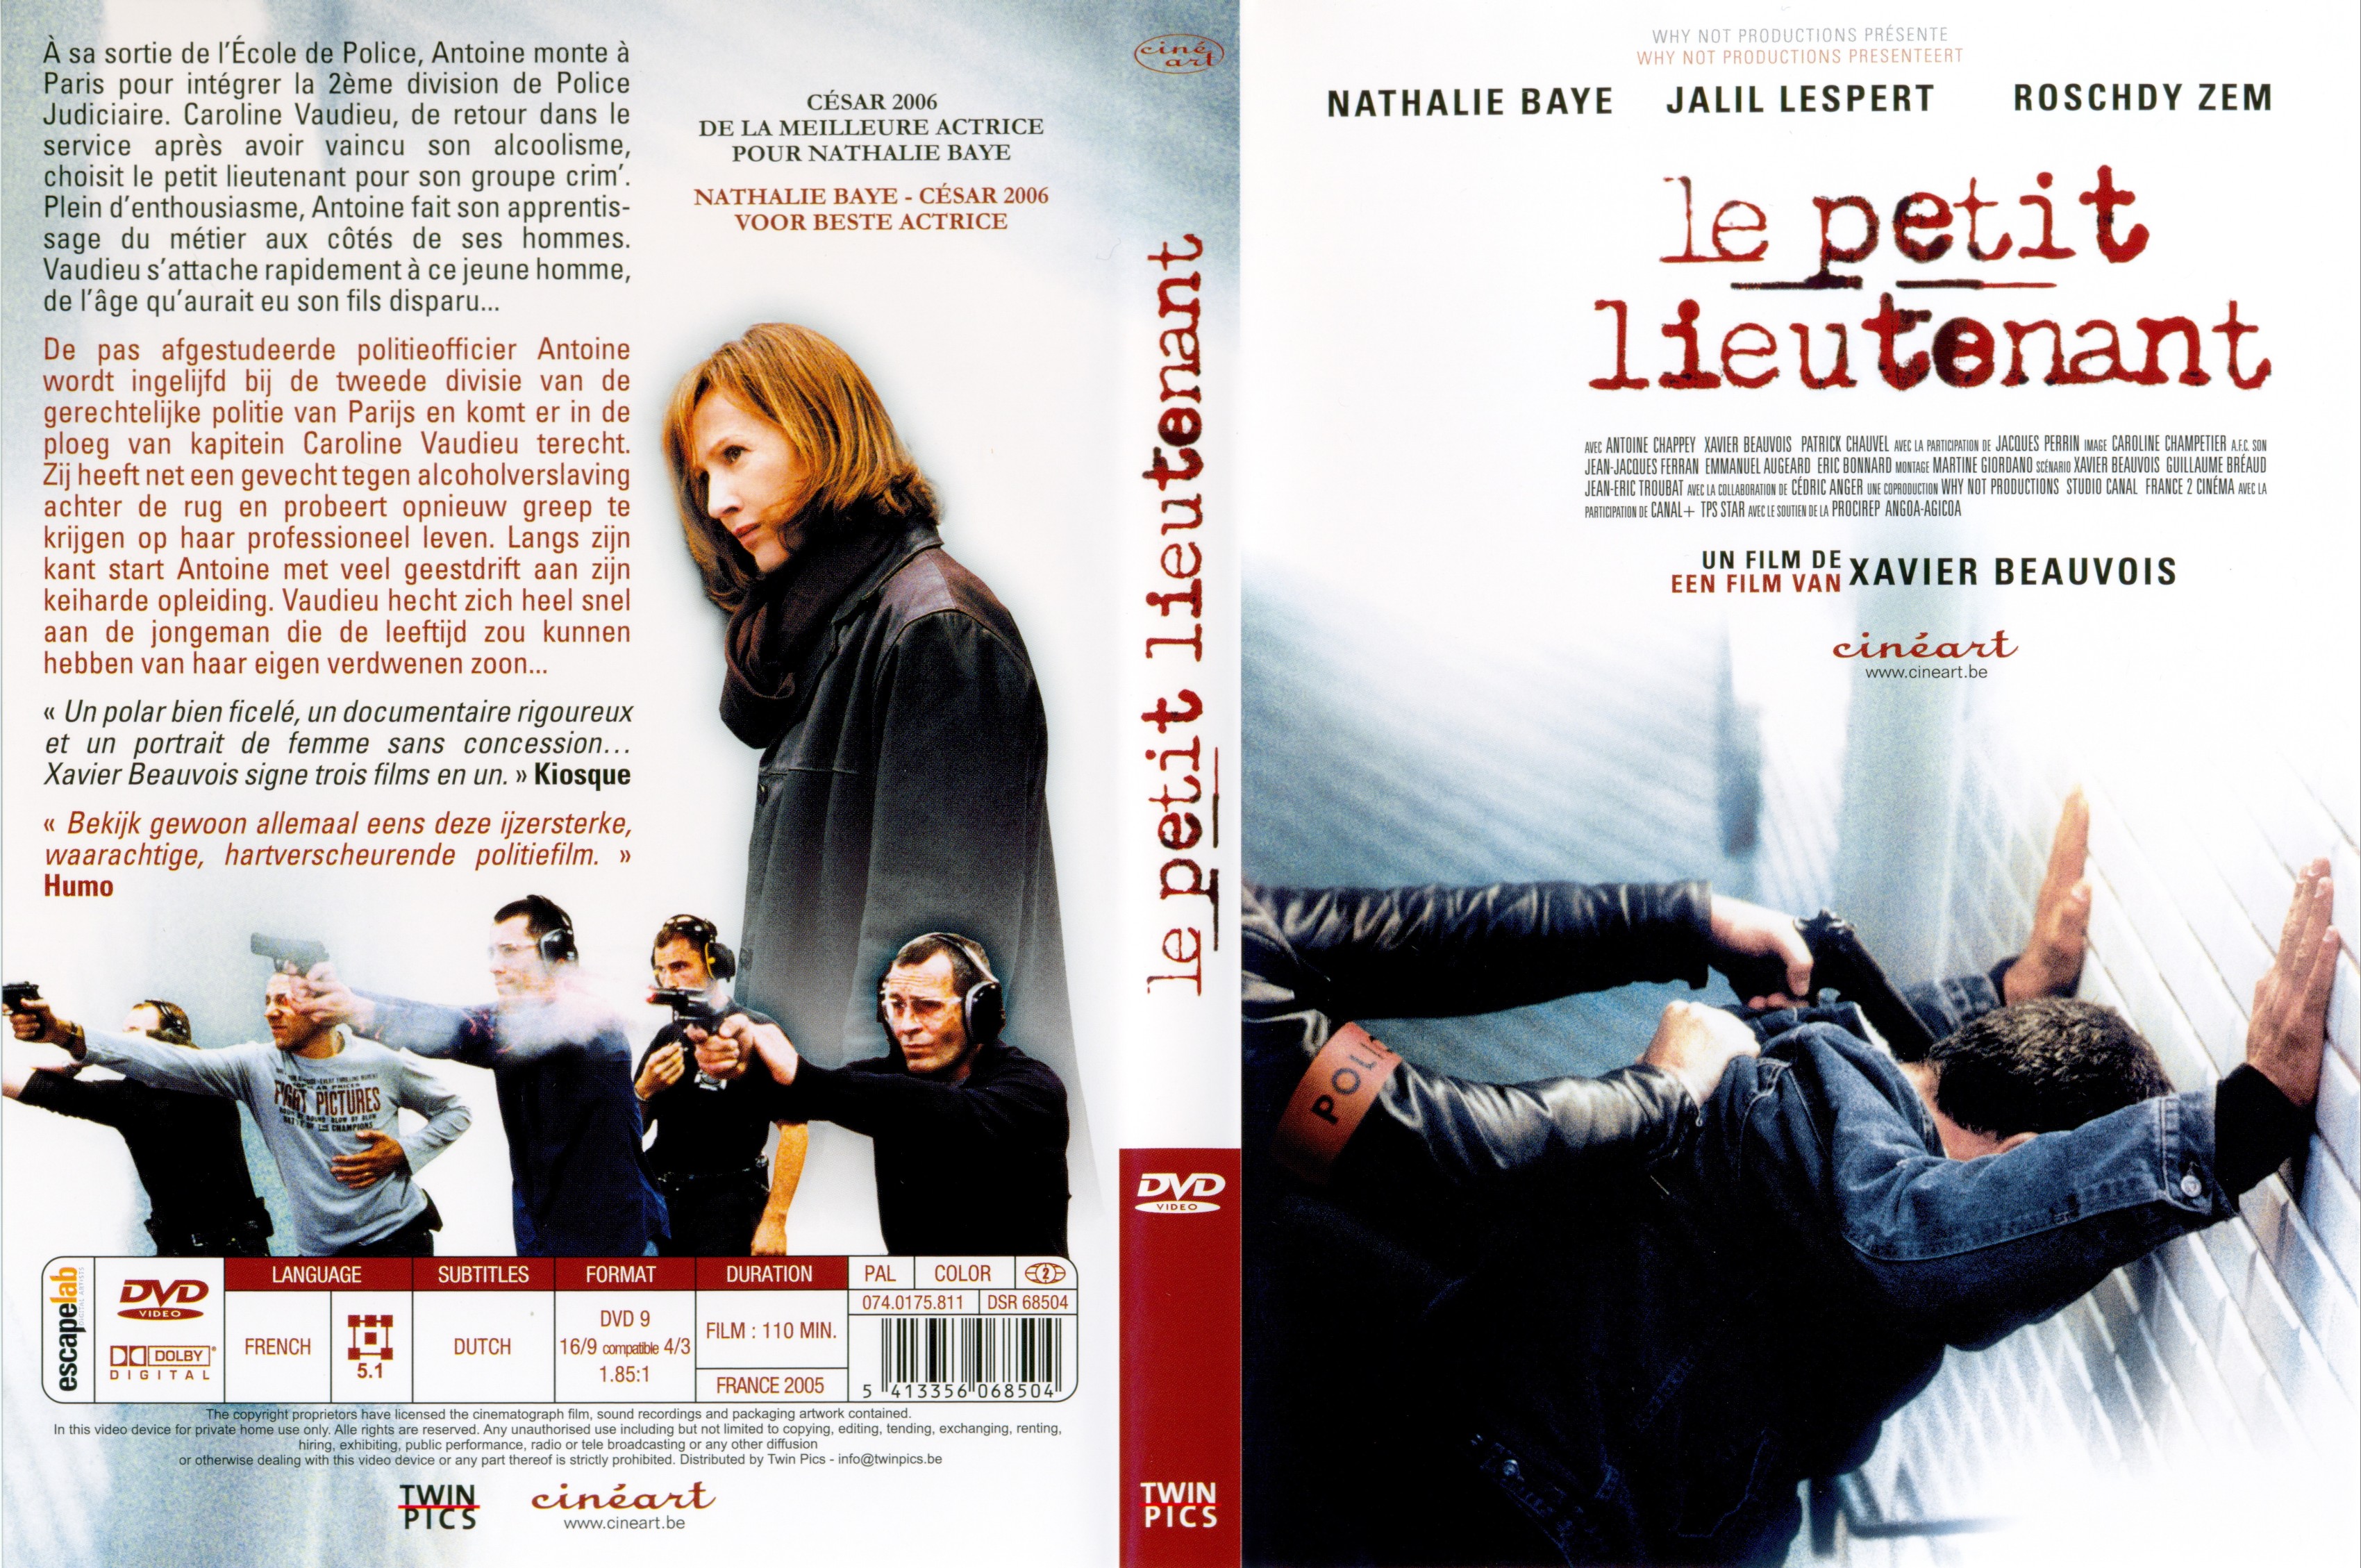 Jaquette DVD Le petit lieutenant v2